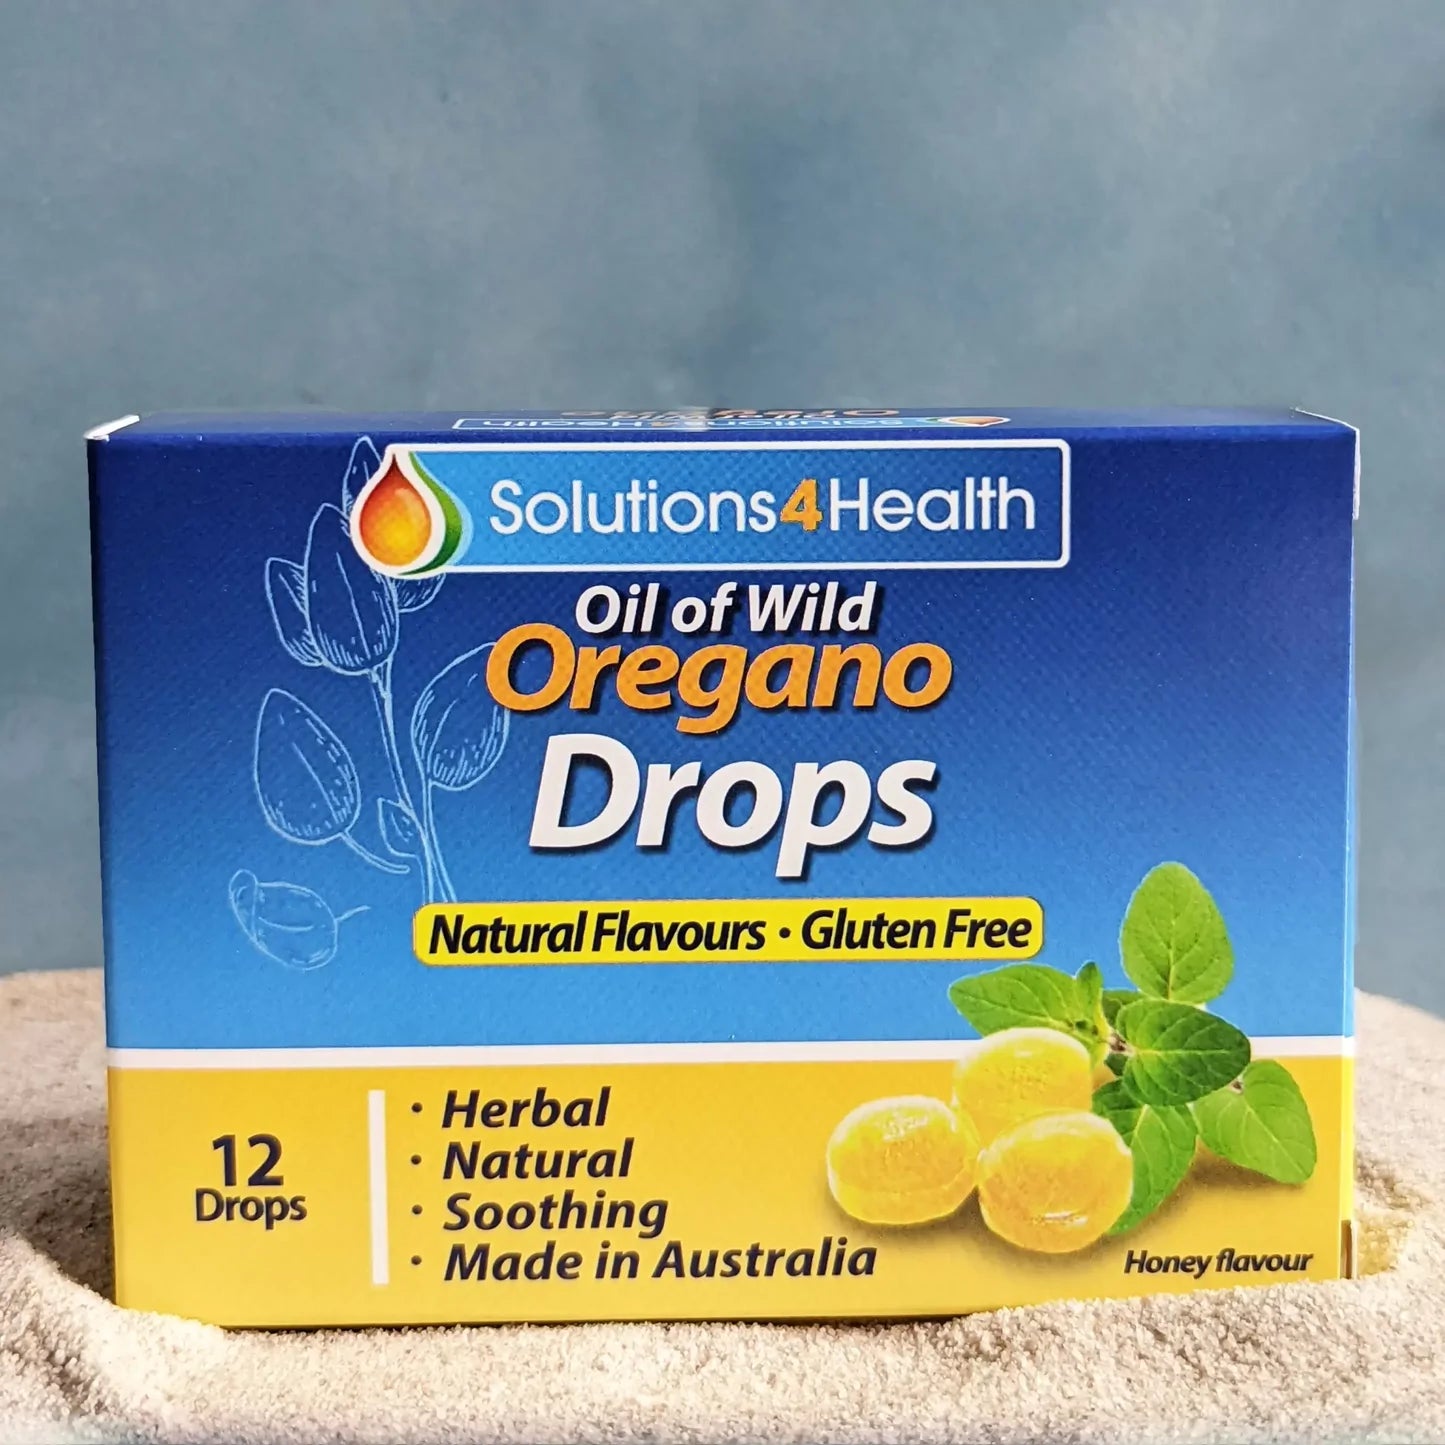 Solutions 4 Health Oil of Wild Oregano Drops